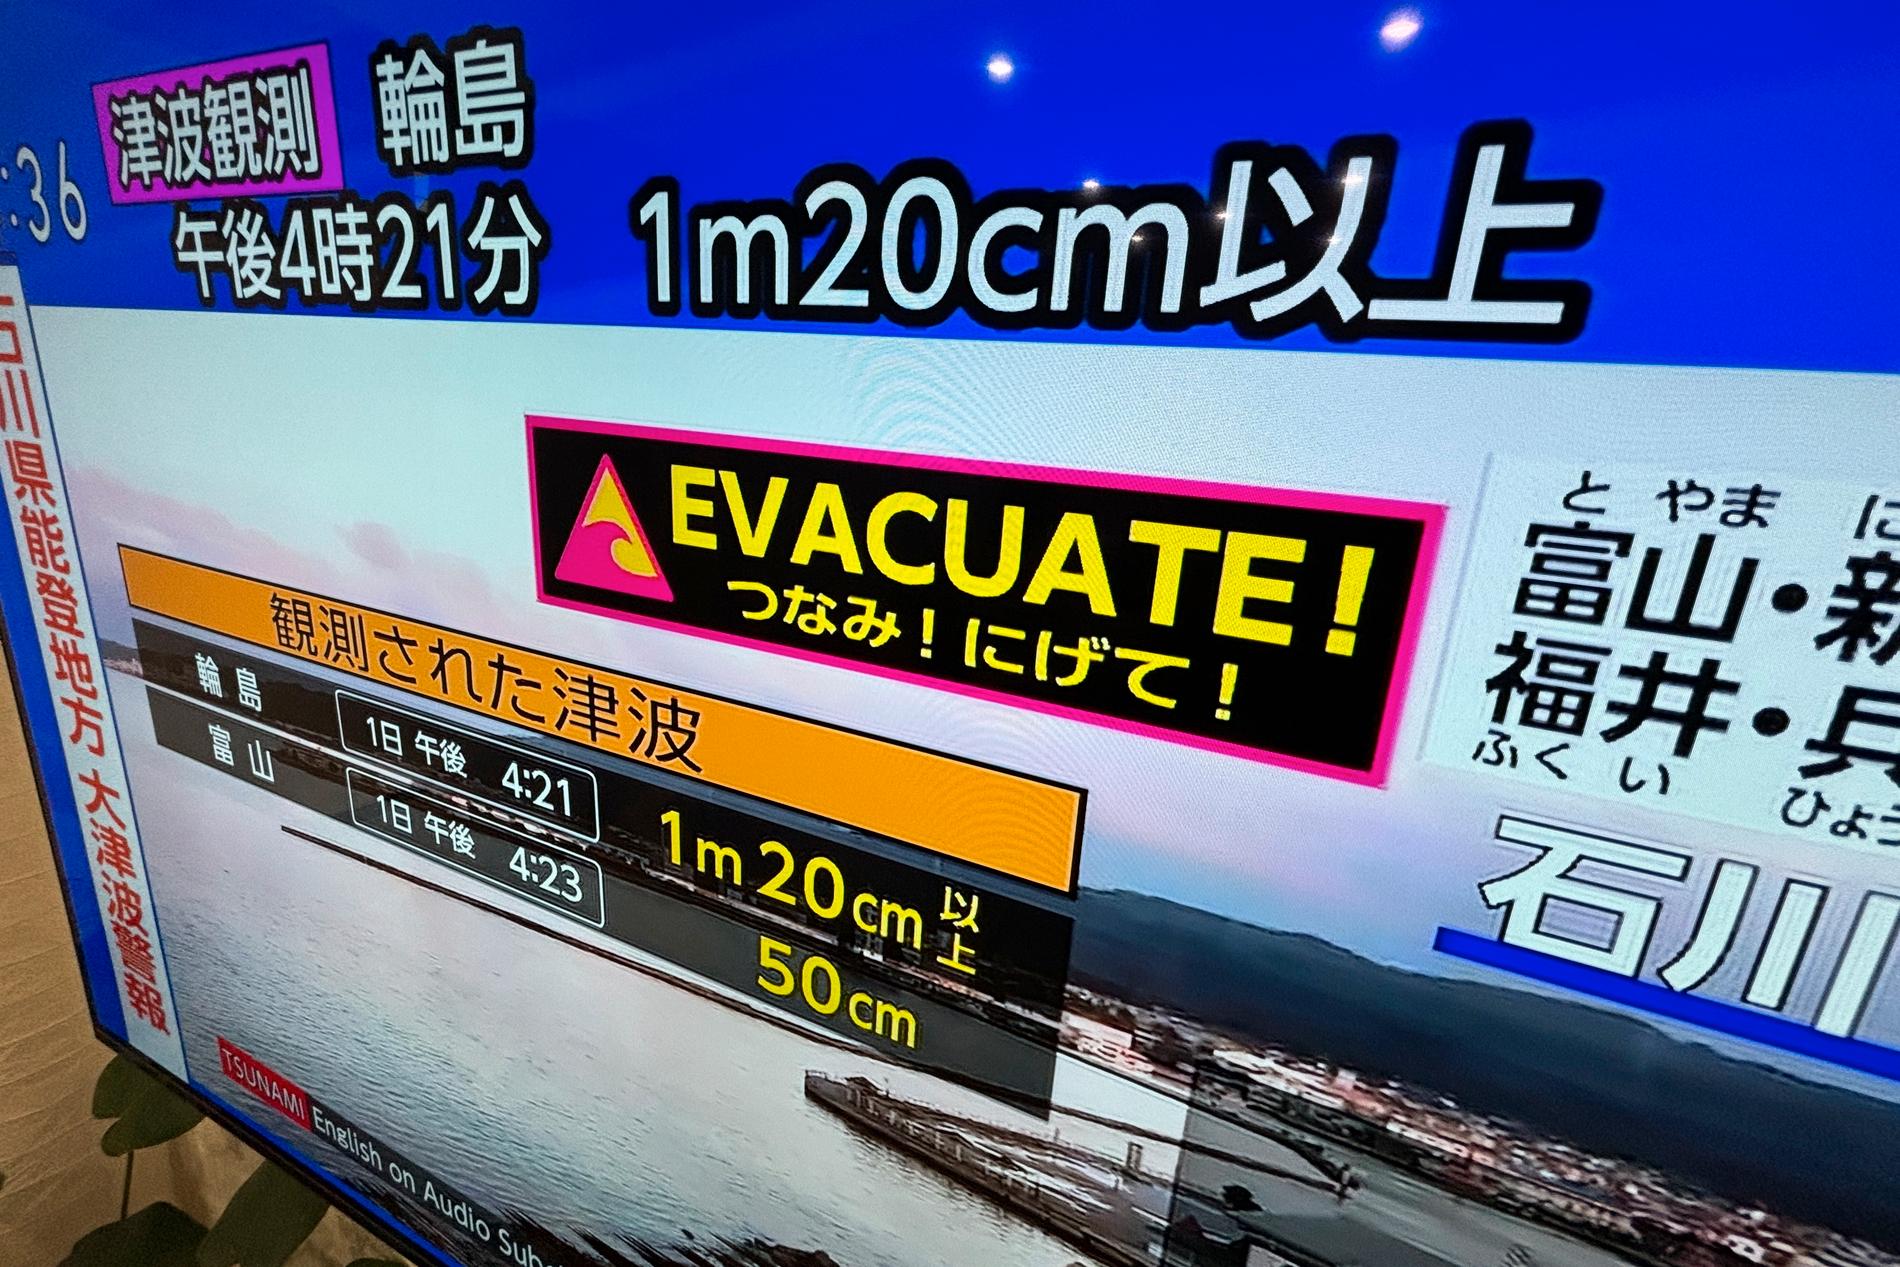 En tsunamivarning utfärdades i Japan och människor uppmanades att evakuera kusten.